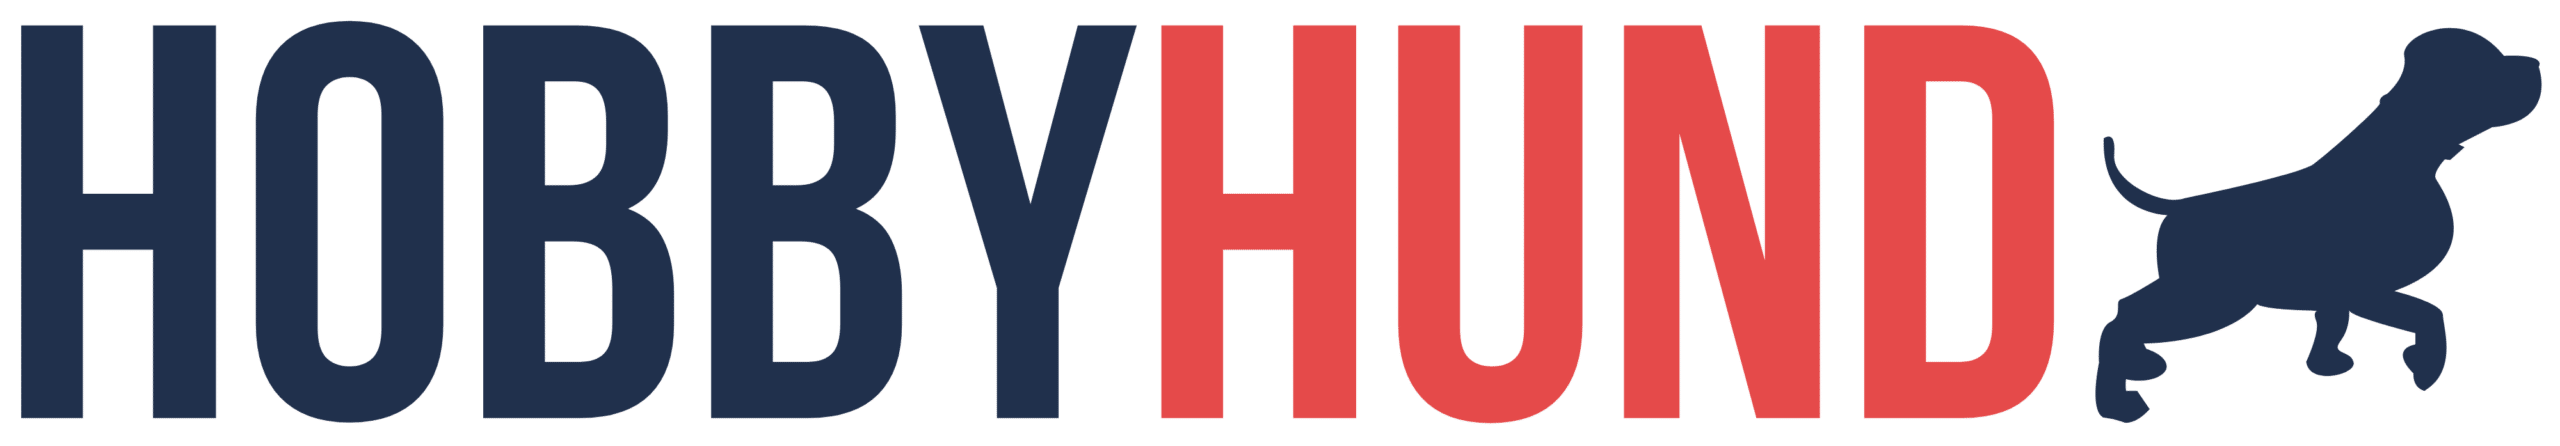 hobbyhund logo